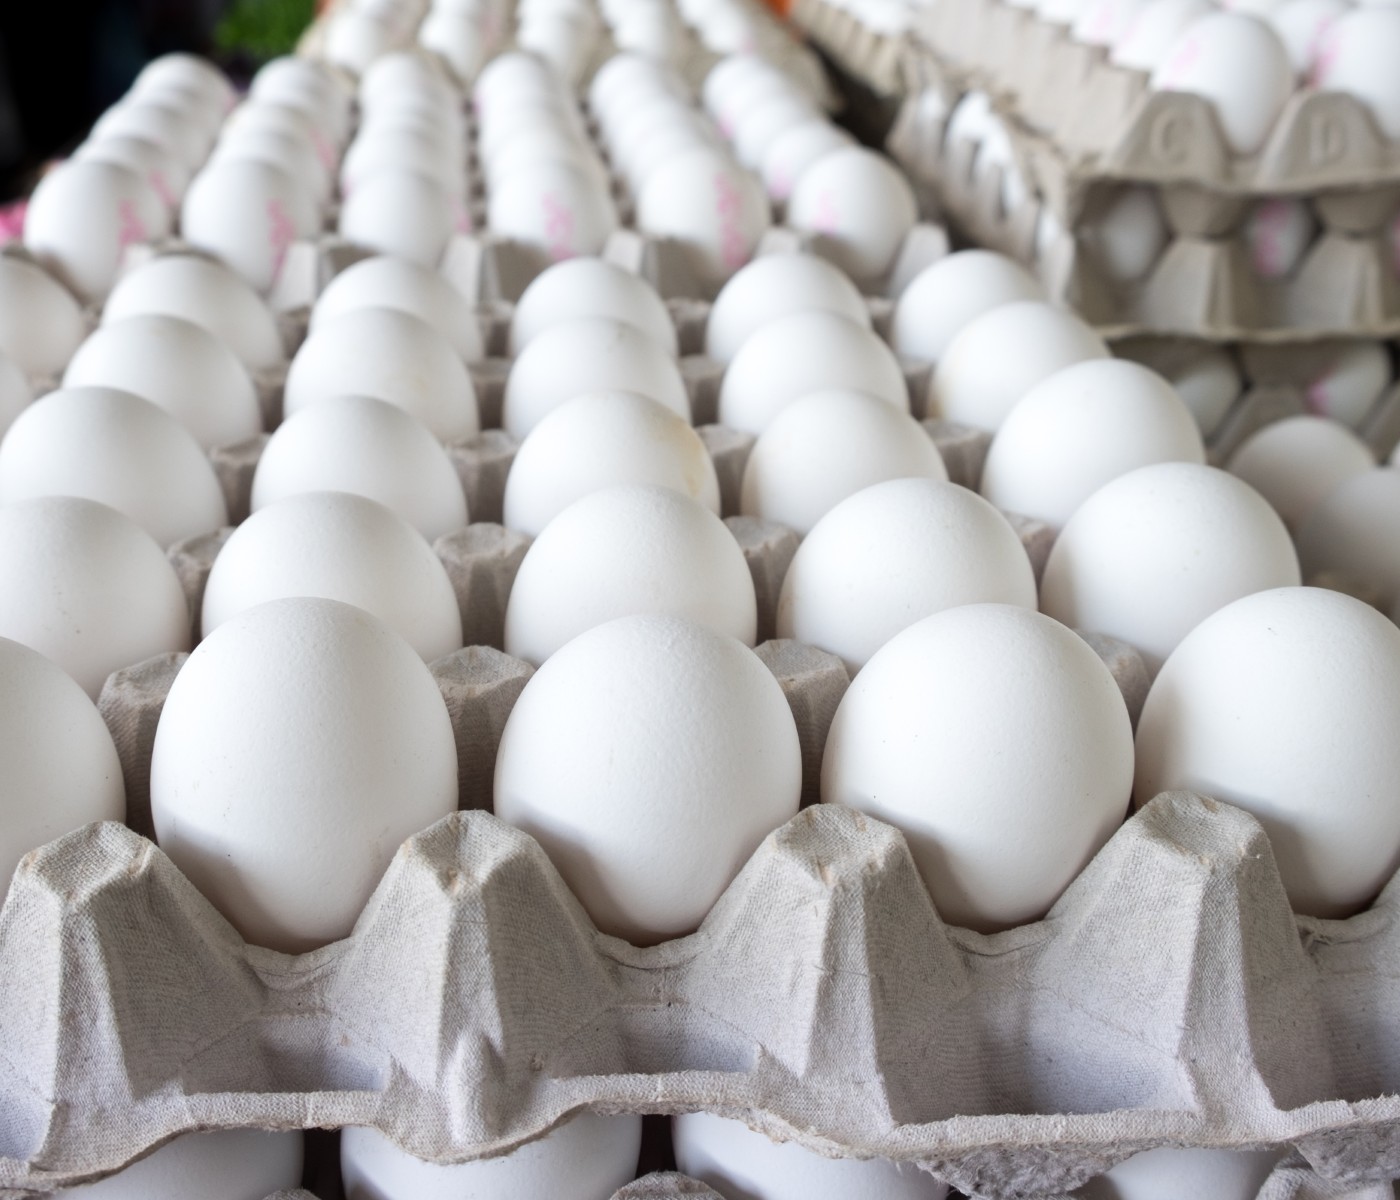 Gobierno Dominicano ha suspendido la exportación de huevos